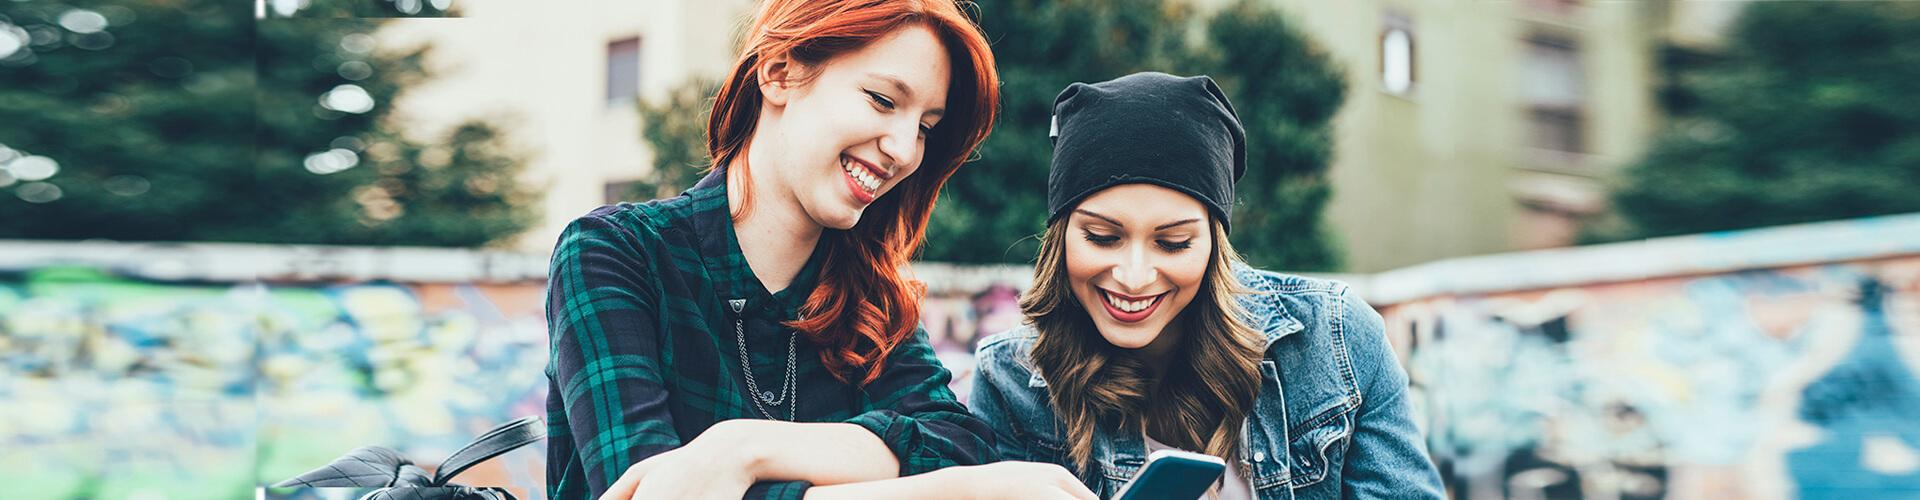 Programa Joven In - Dos chicas jóvenes sonriendo mientras están con el móvil en la mano sentadas en un parque